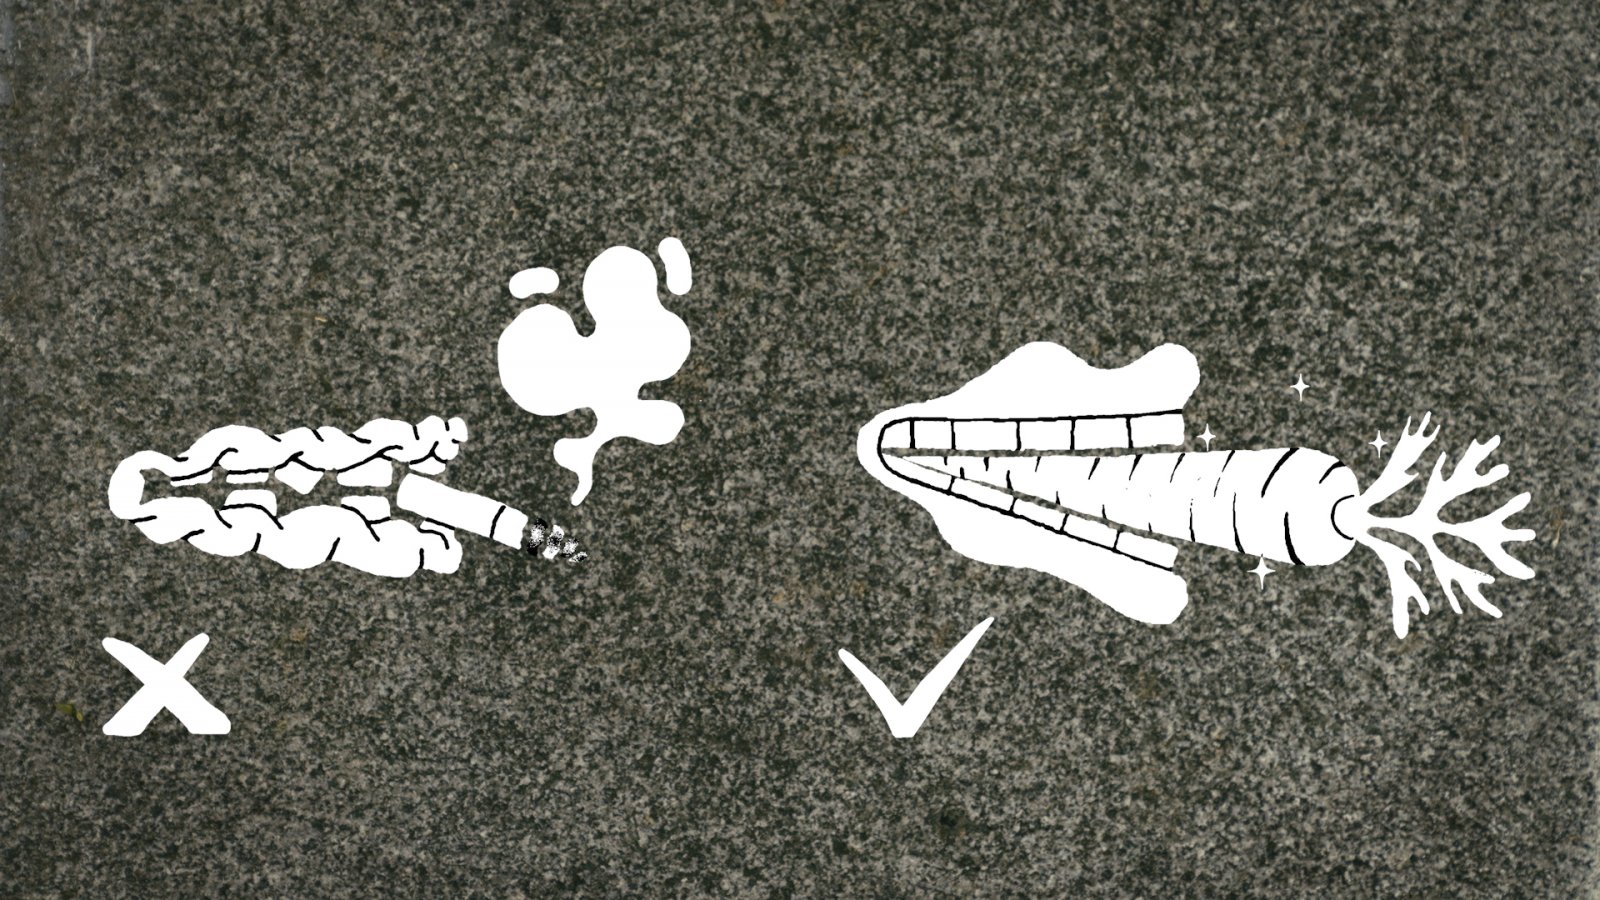 Een street art-afbeelding ter promotie van de rookvrije campus. Aan de linkerzijde een ongezond ogende mond met een sigaret en een kruisje. Aan de rechterzijde een gezond ogende mond met een wortel tussen de tanden en ernaast een vinkje